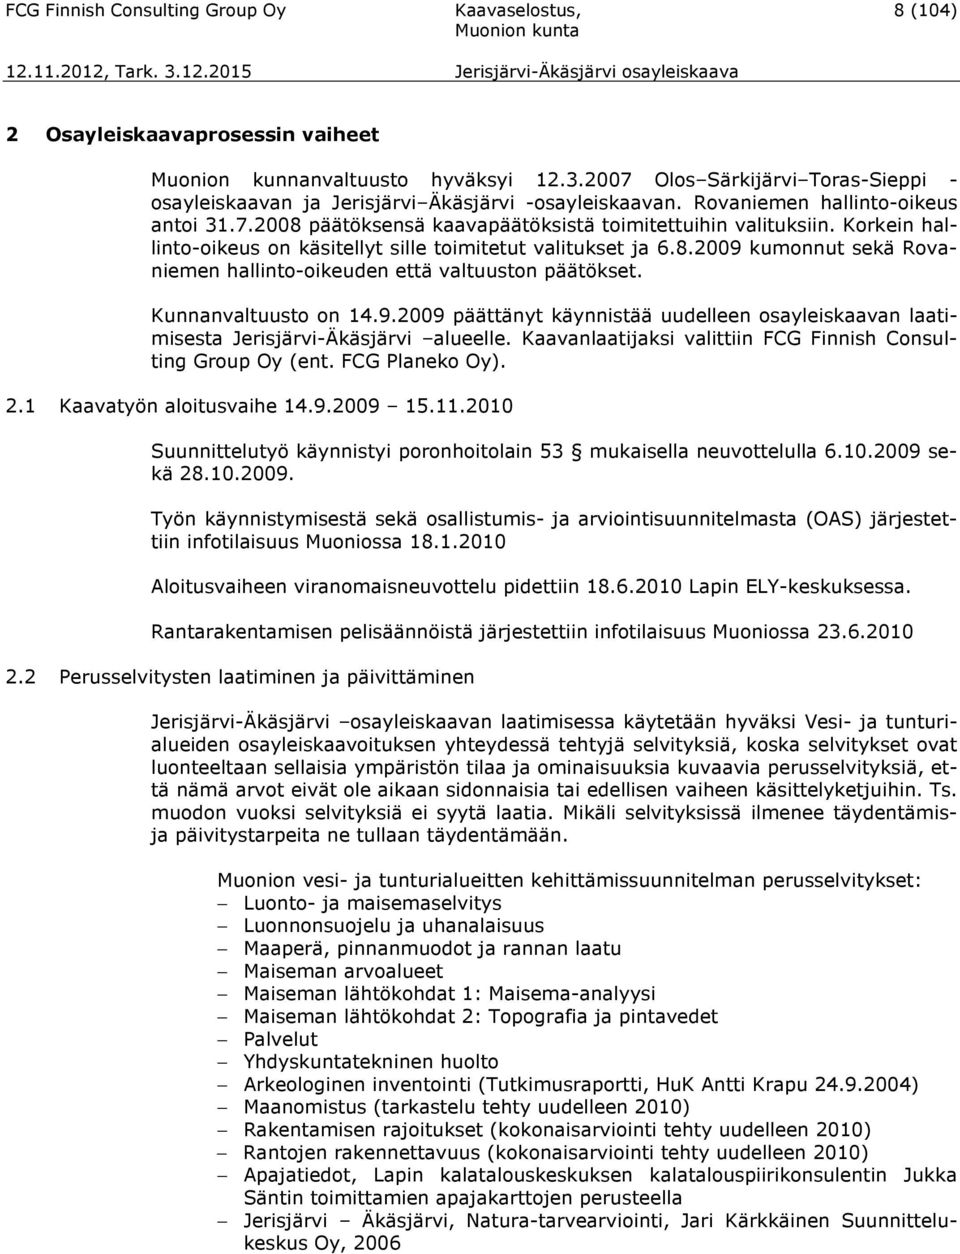 Korkein hallinto-oikeus on käsitellyt sille toimitetut valitukset ja 6.8.2009 kumonnut sekä Rovaniemen hallinto-oikeuden että valtuuston päätökset. Kunnanvaltuusto on 14.9.2009 päättänyt käynnistää uudelleen osayleiskaavan laatimisesta Jerisjärvi-Äkäsjärvi alueelle.